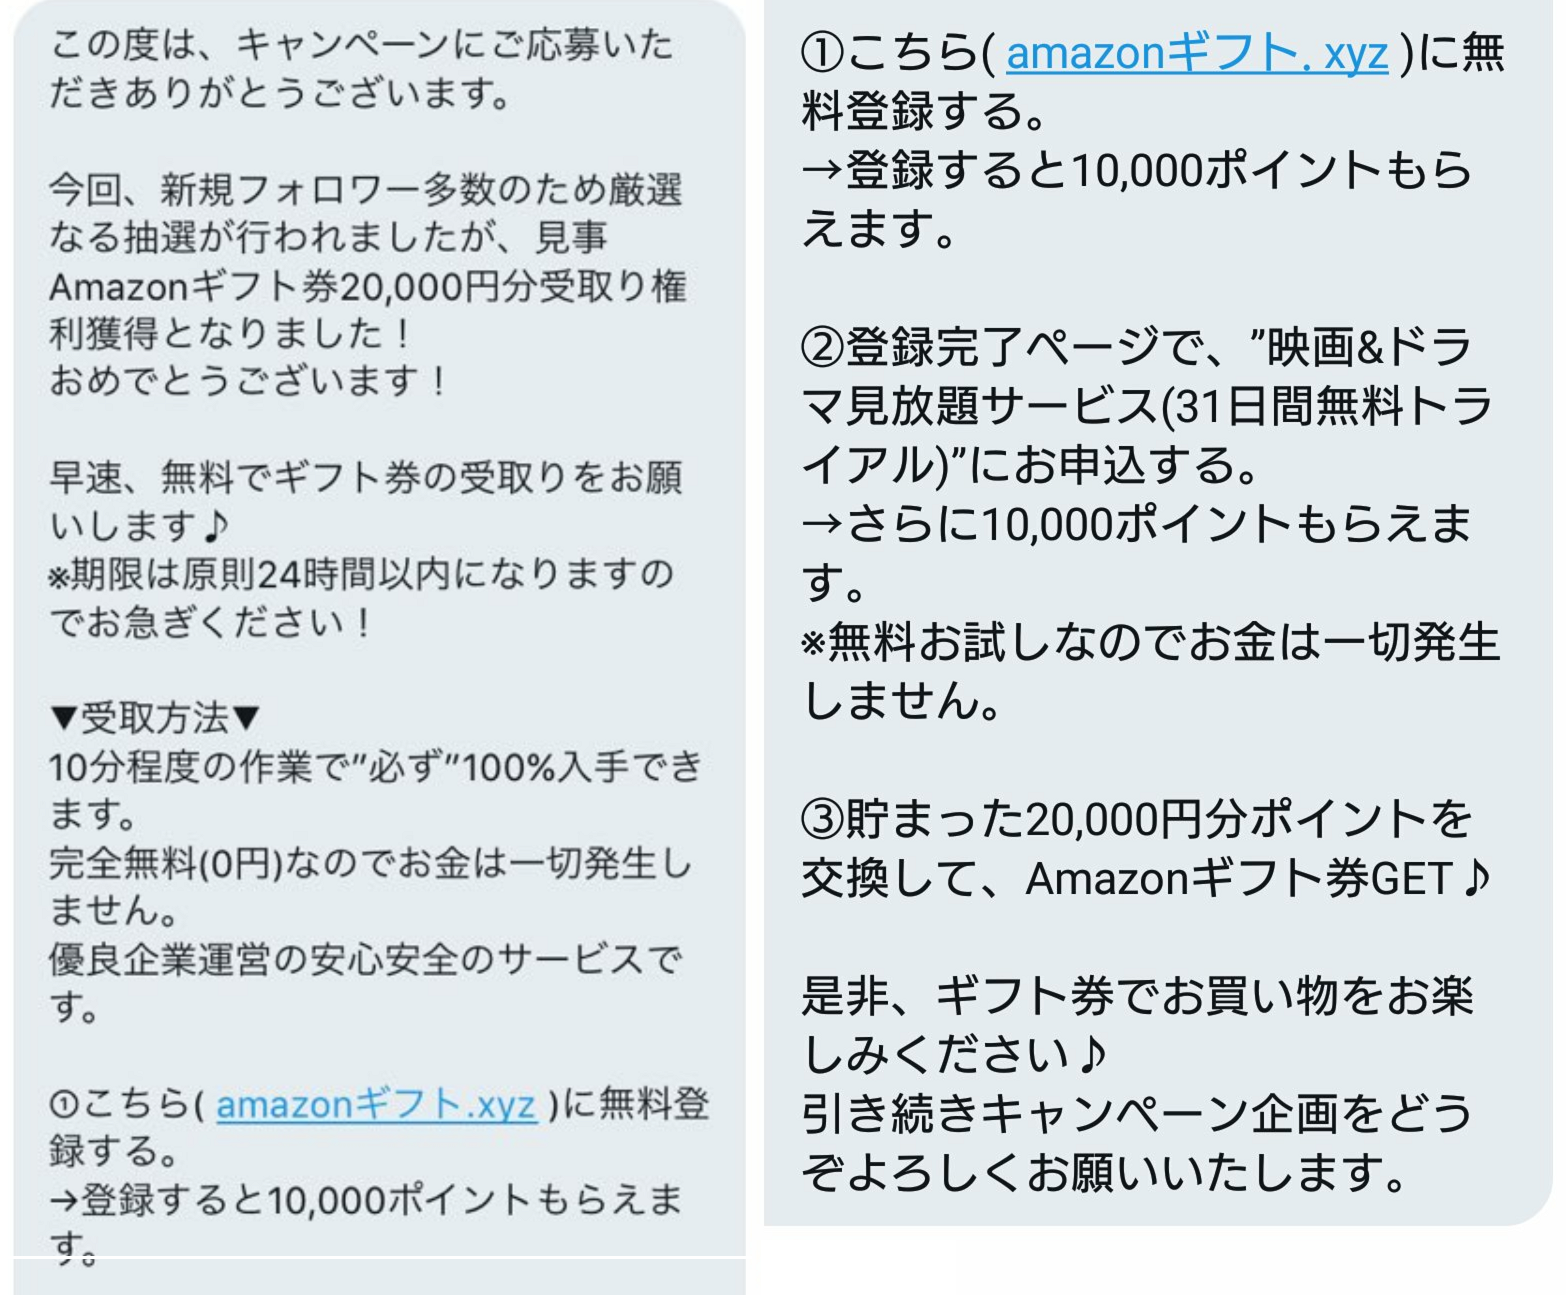 アボカド Amazonギフト 000円の実態は Twitter利用者注意 日本ポイントサイト情報 Pointjp